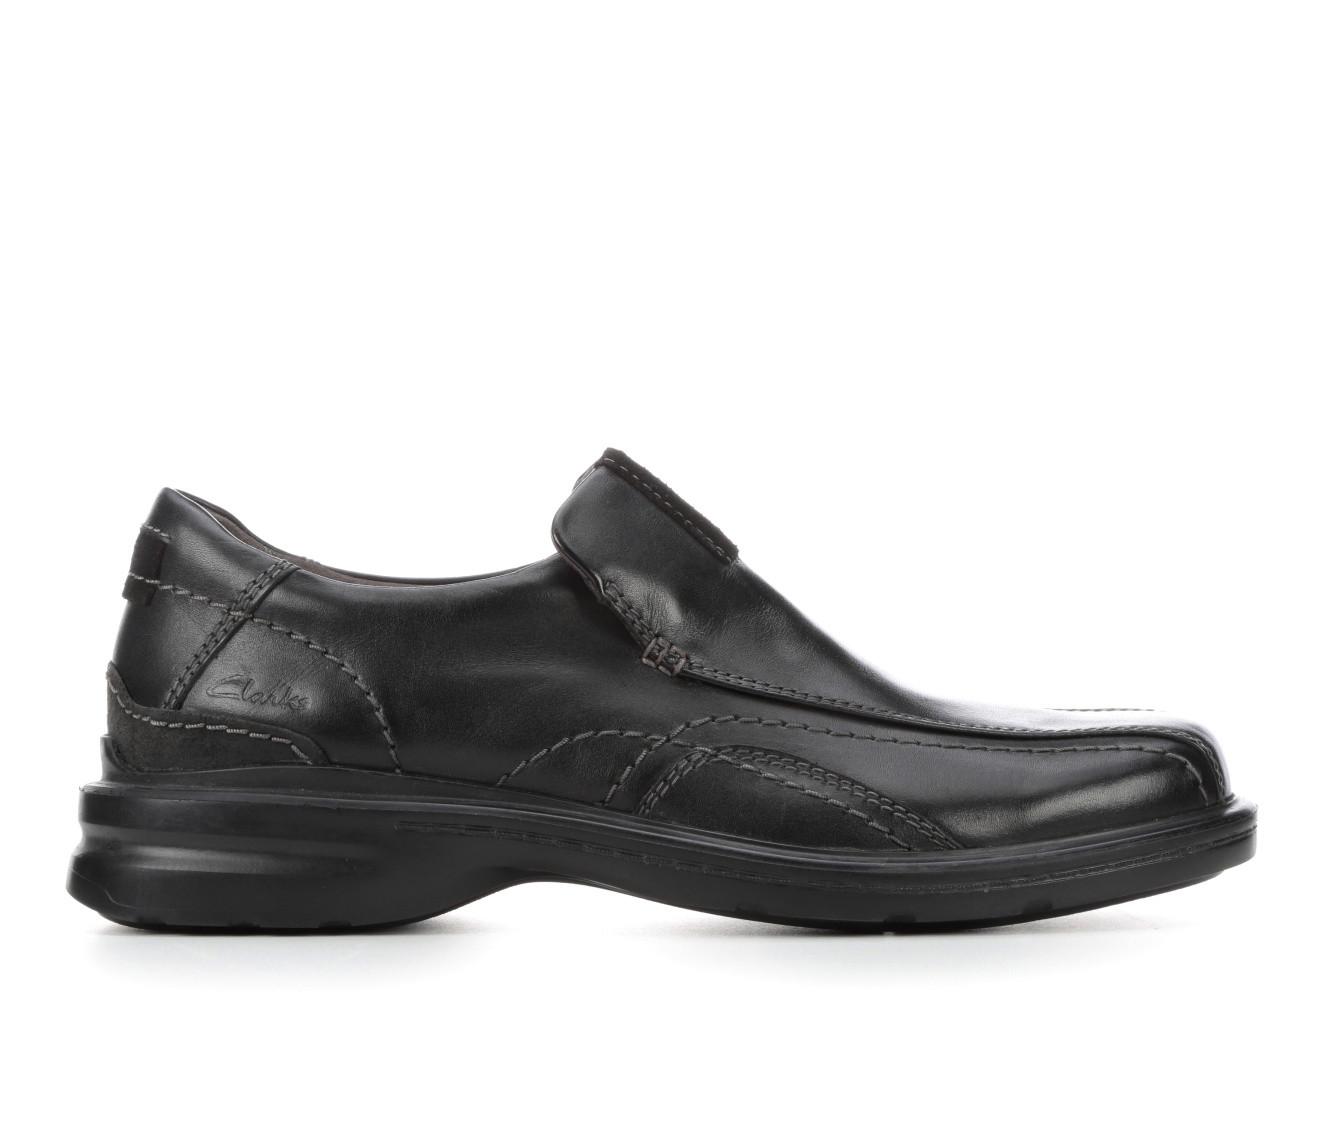 Men's Clarks Gessler Step Dress Loafers